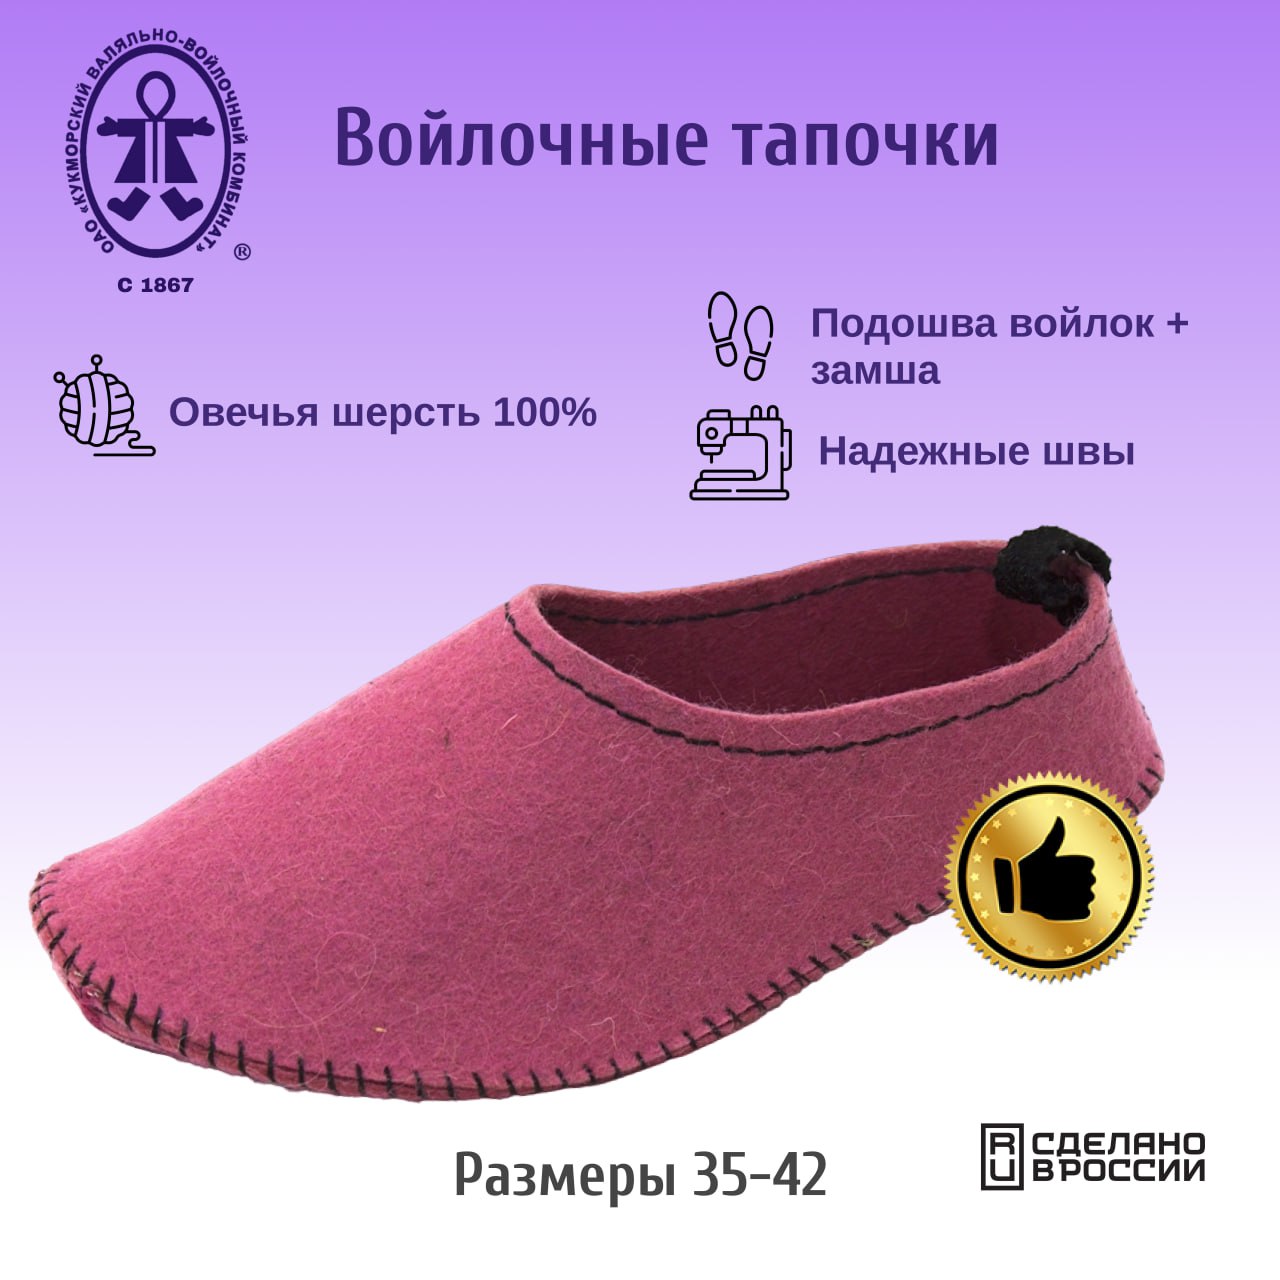 Тапочки женские Кукморские валенки Т-34-2033 розовые 37 RU